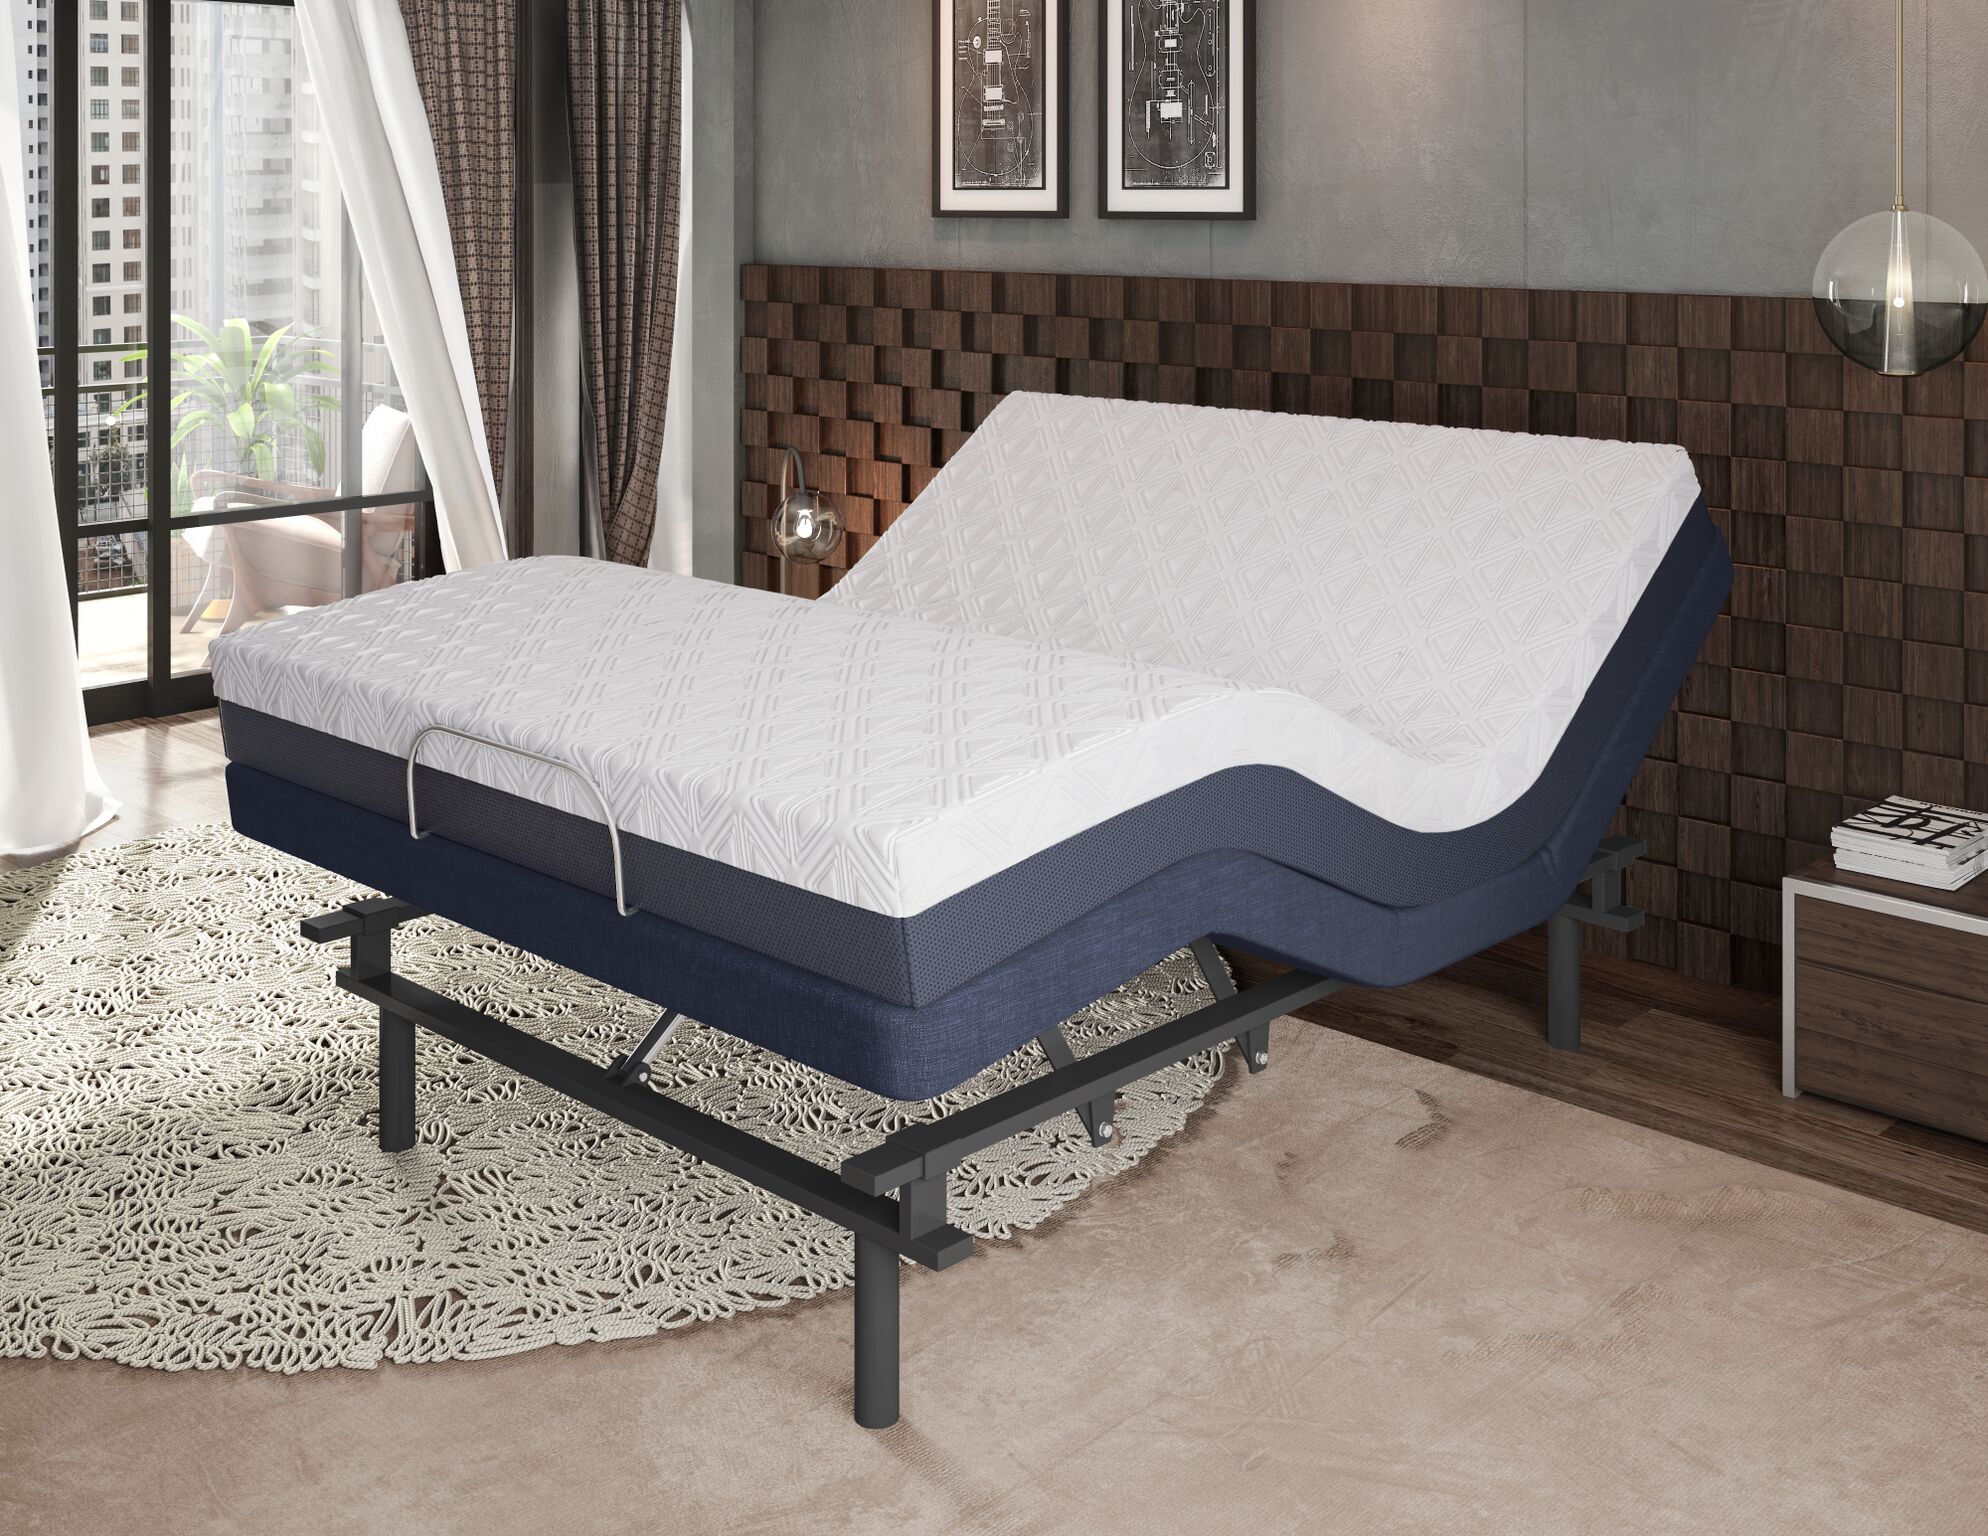 adjustable bed mattresses queen size